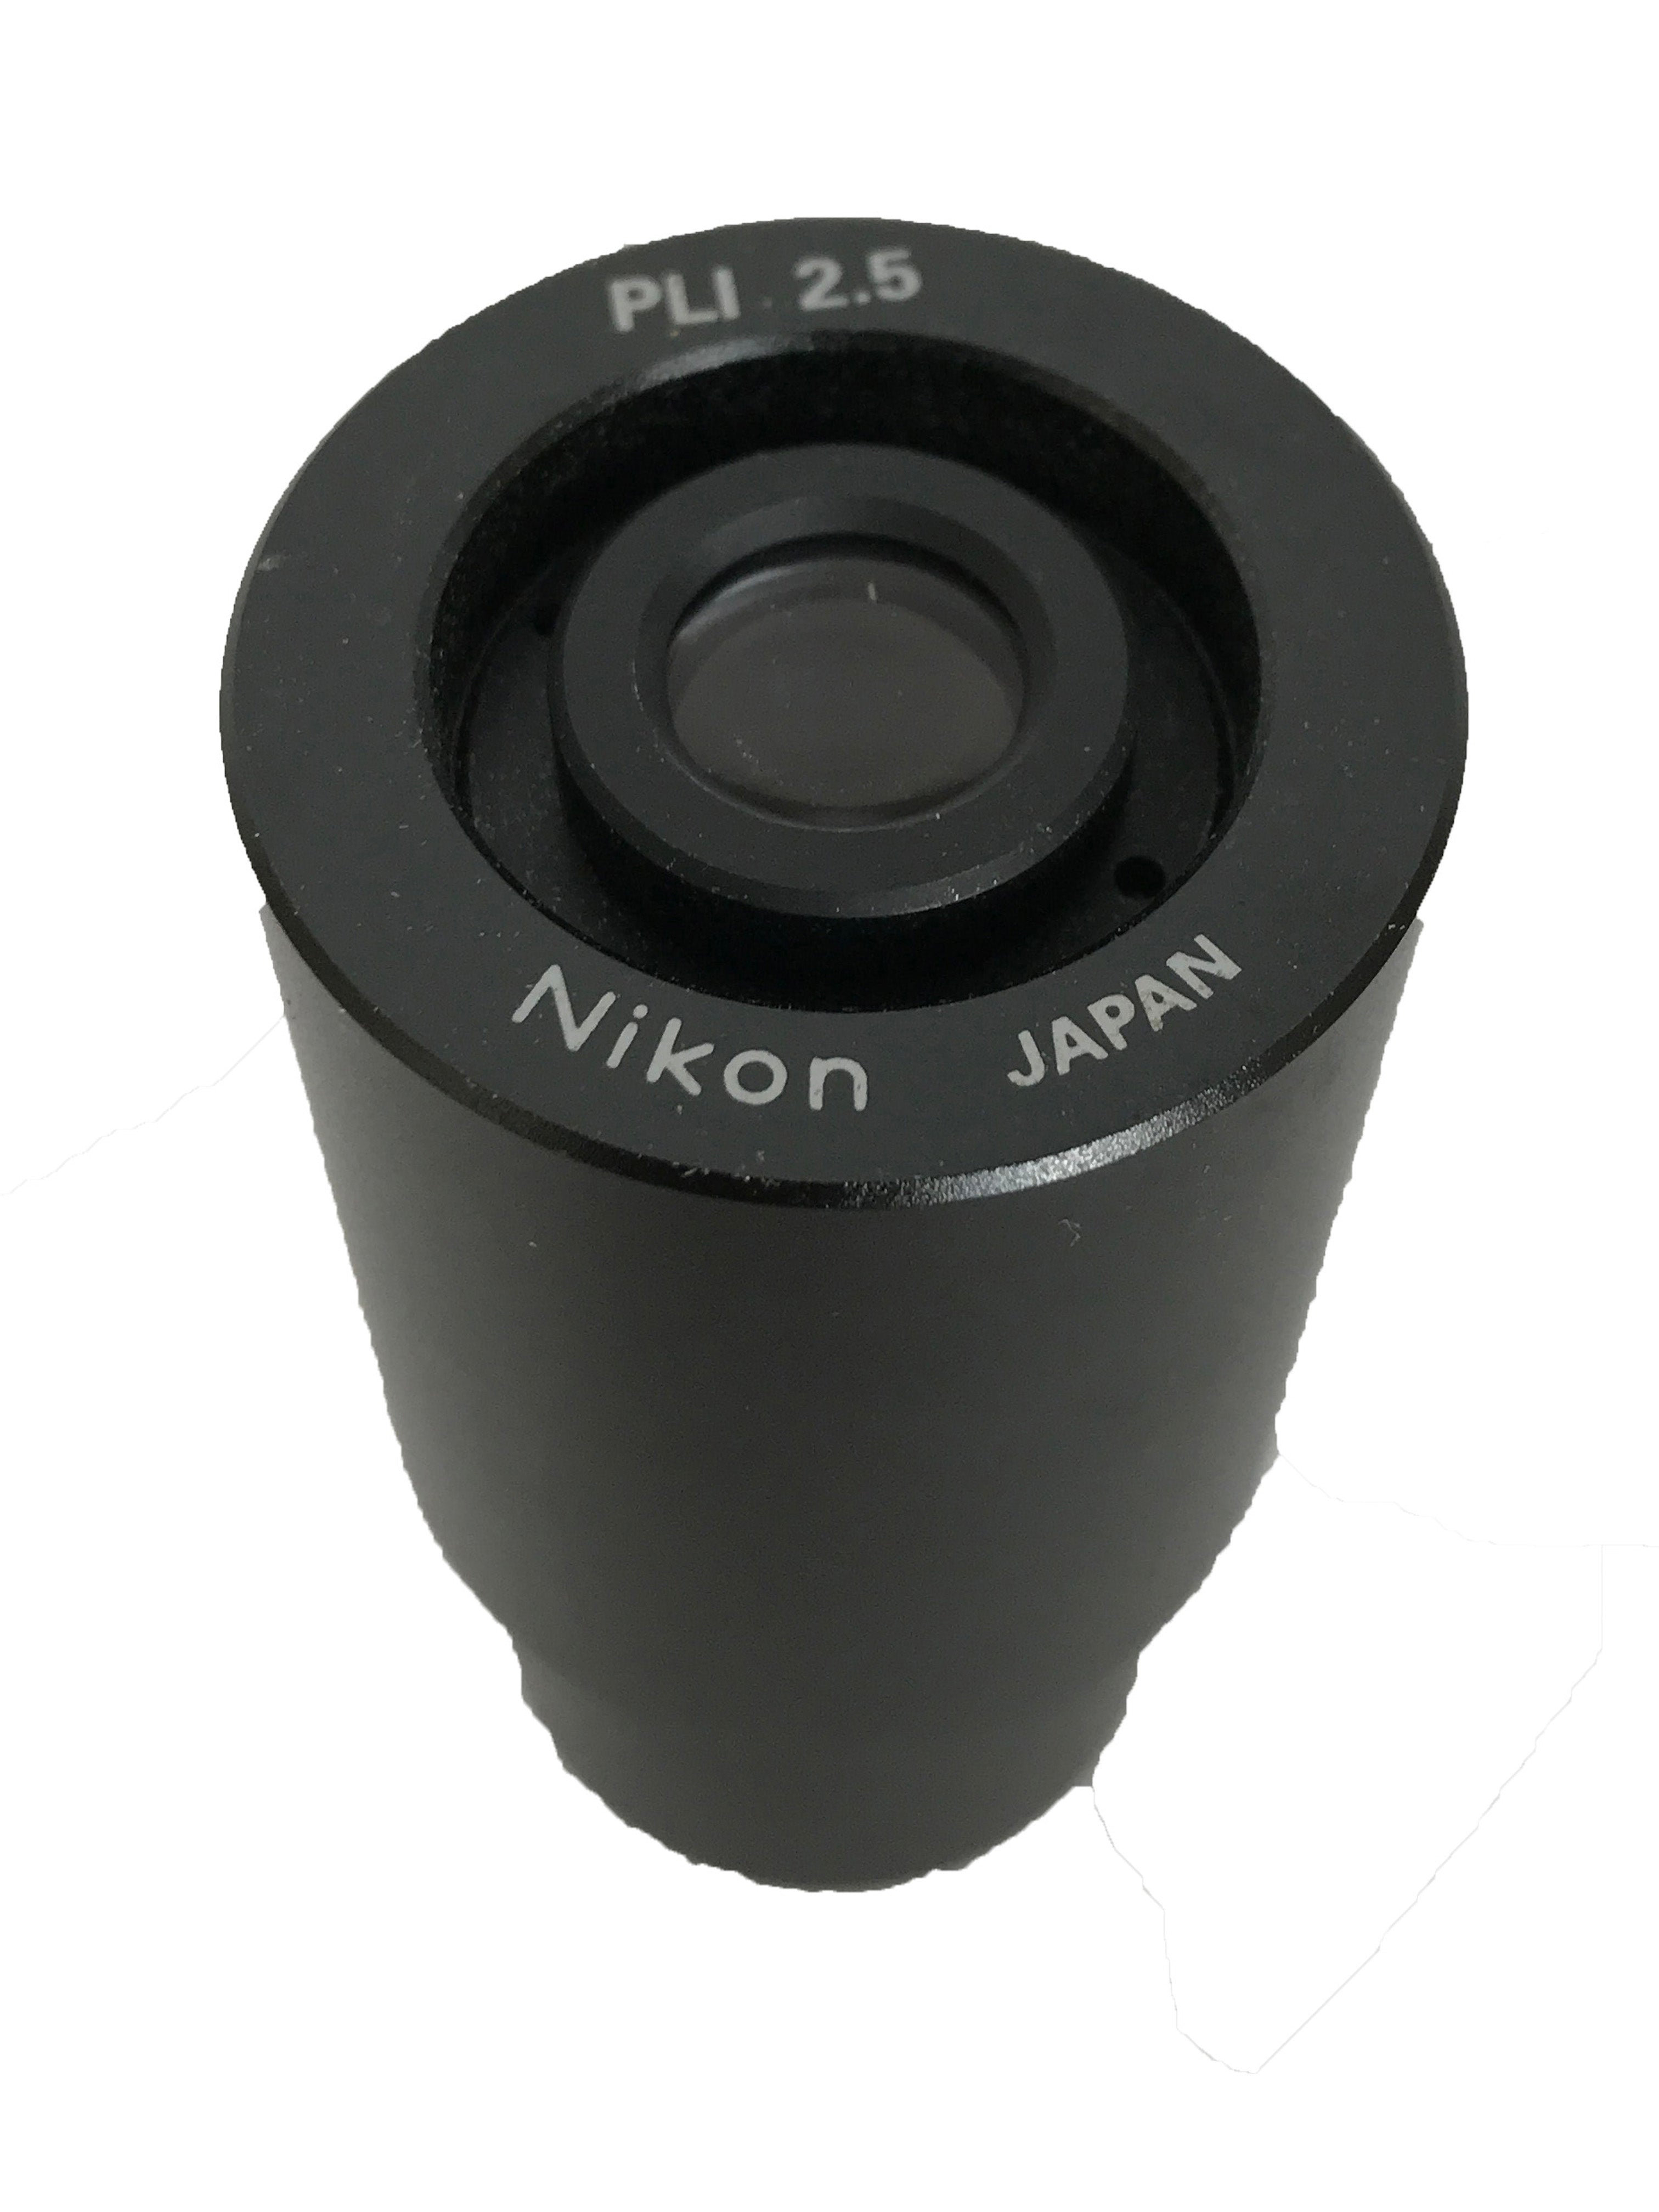 Nikon PLI 2.5 Photo Relay Eyepiece Lens